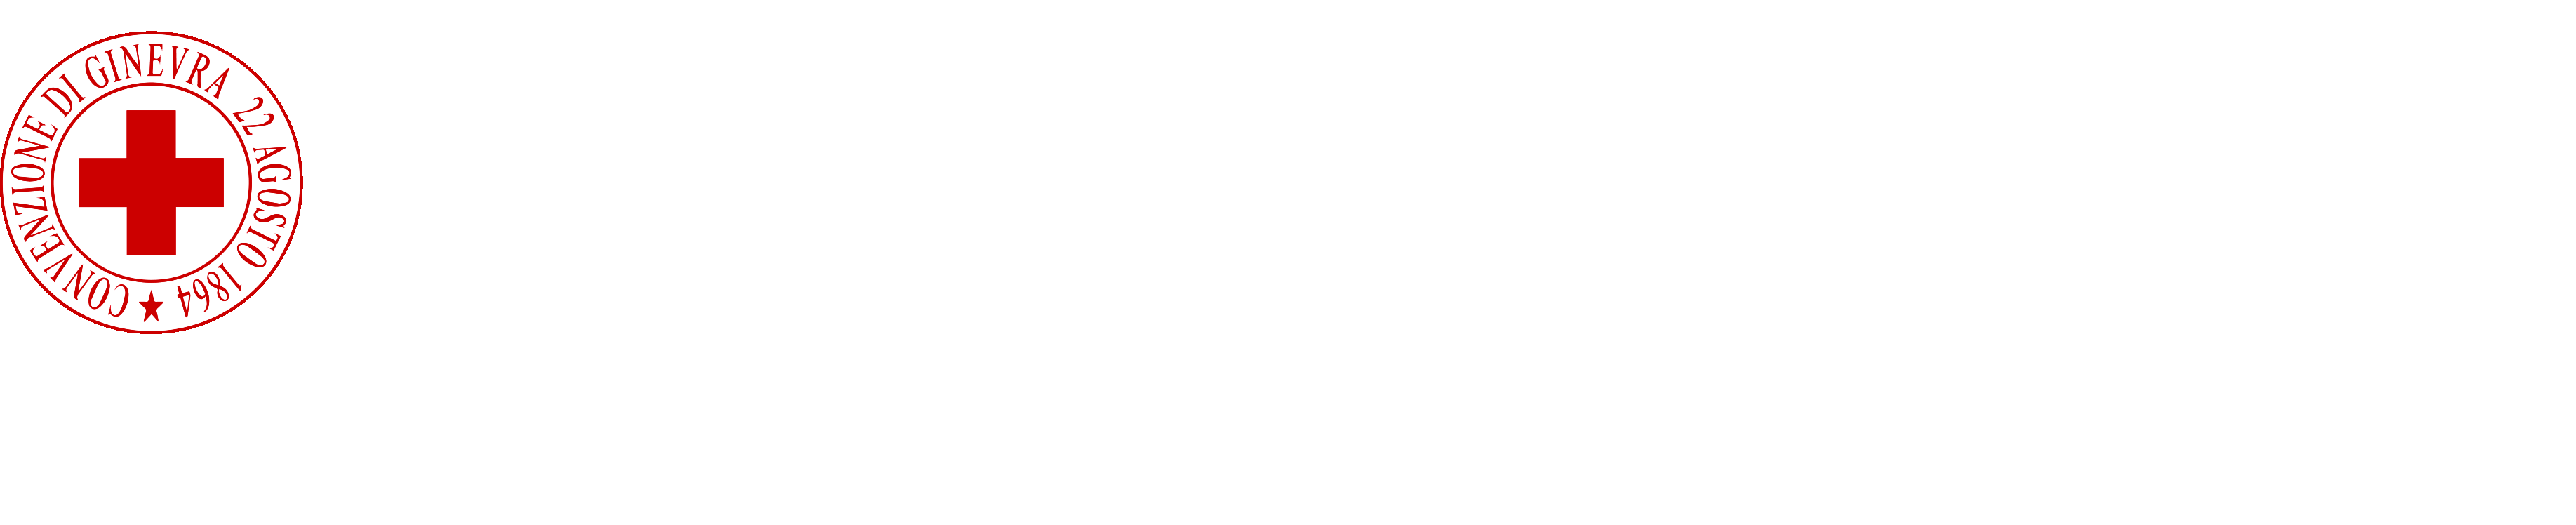 Croce Rossa Italiana - Comitato di Padova